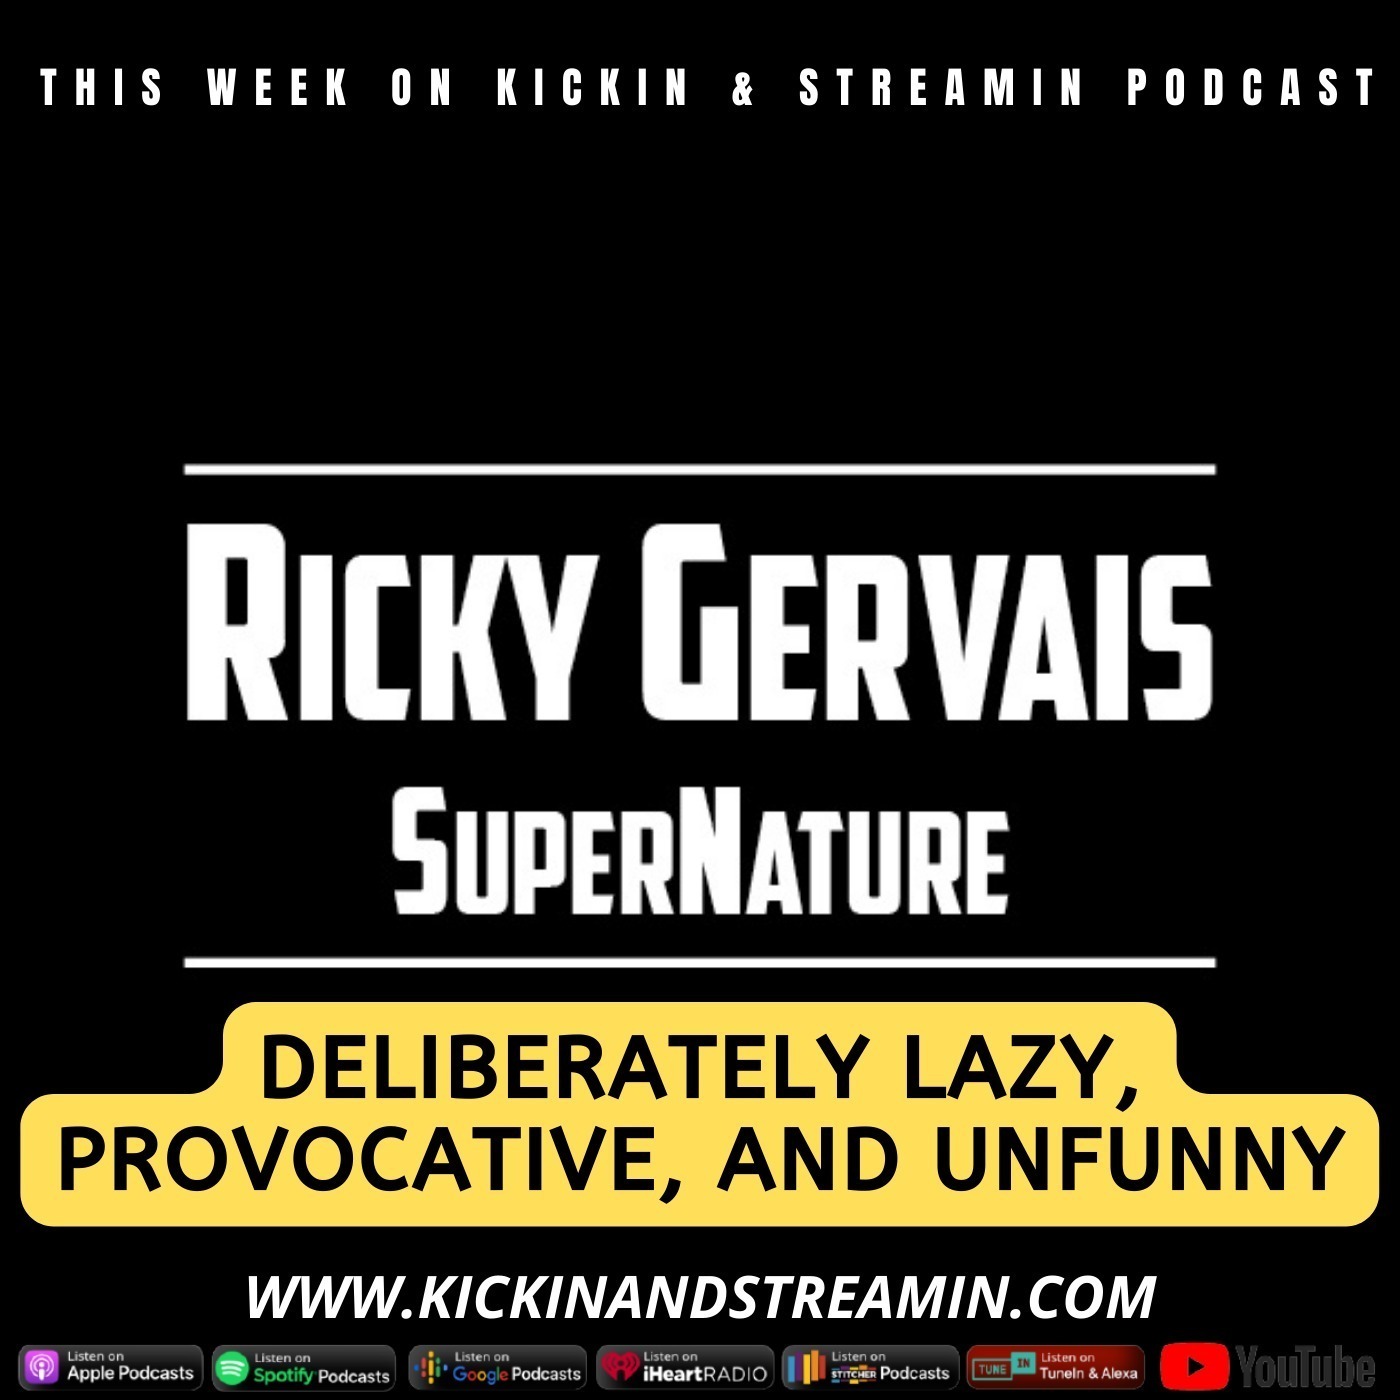 Ricky Gervais' SuperNature: Deliberately Lazy, Provocative & Unfunny